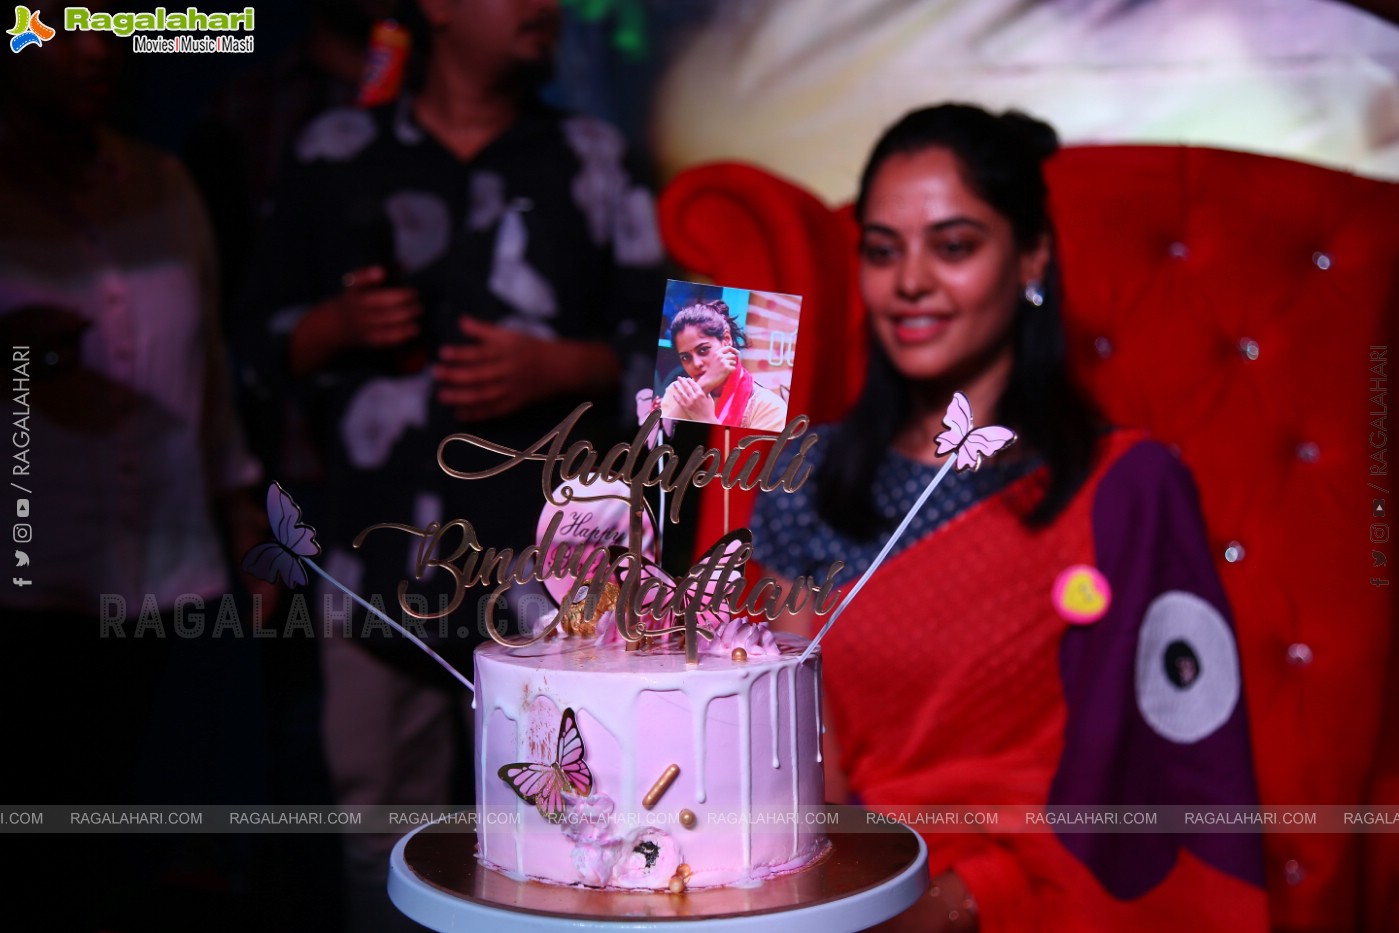 Bigg Boss Telugu Winner Bindu Madhavi Birthday Celebrations at Red Lion